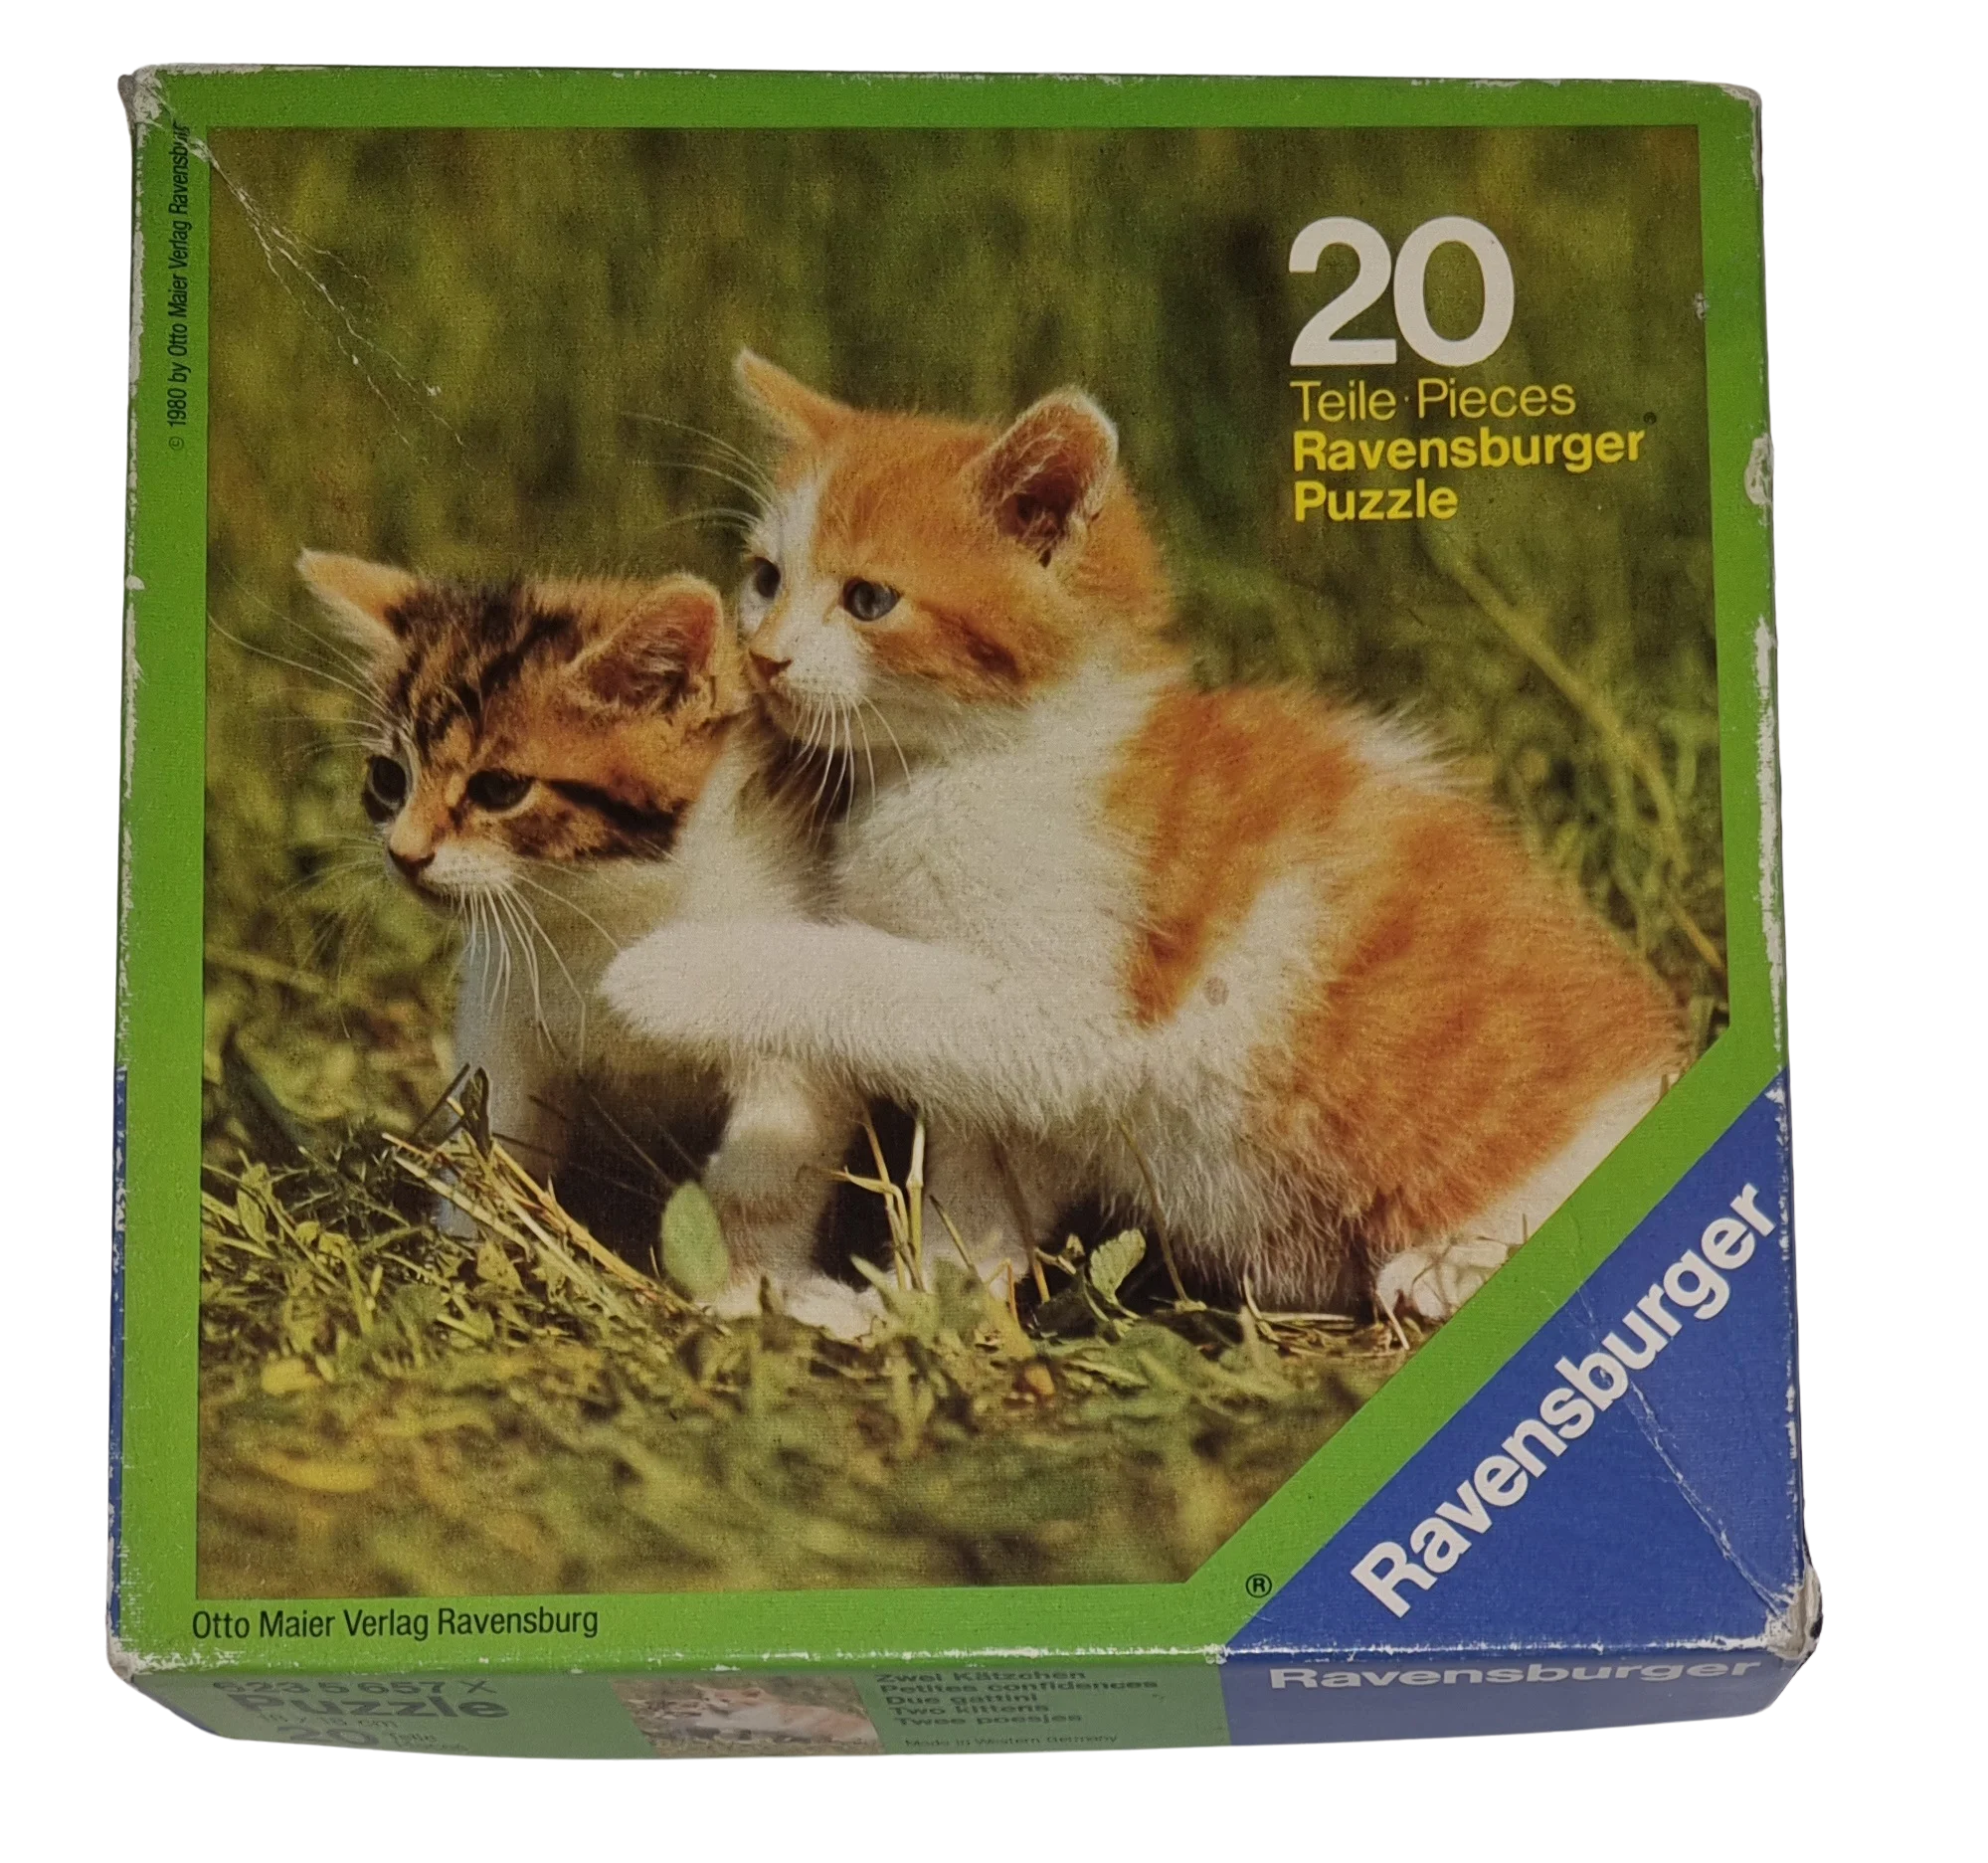 Ravensburger Puzzle 20 Teile Zwei Kätzchen 6235657X